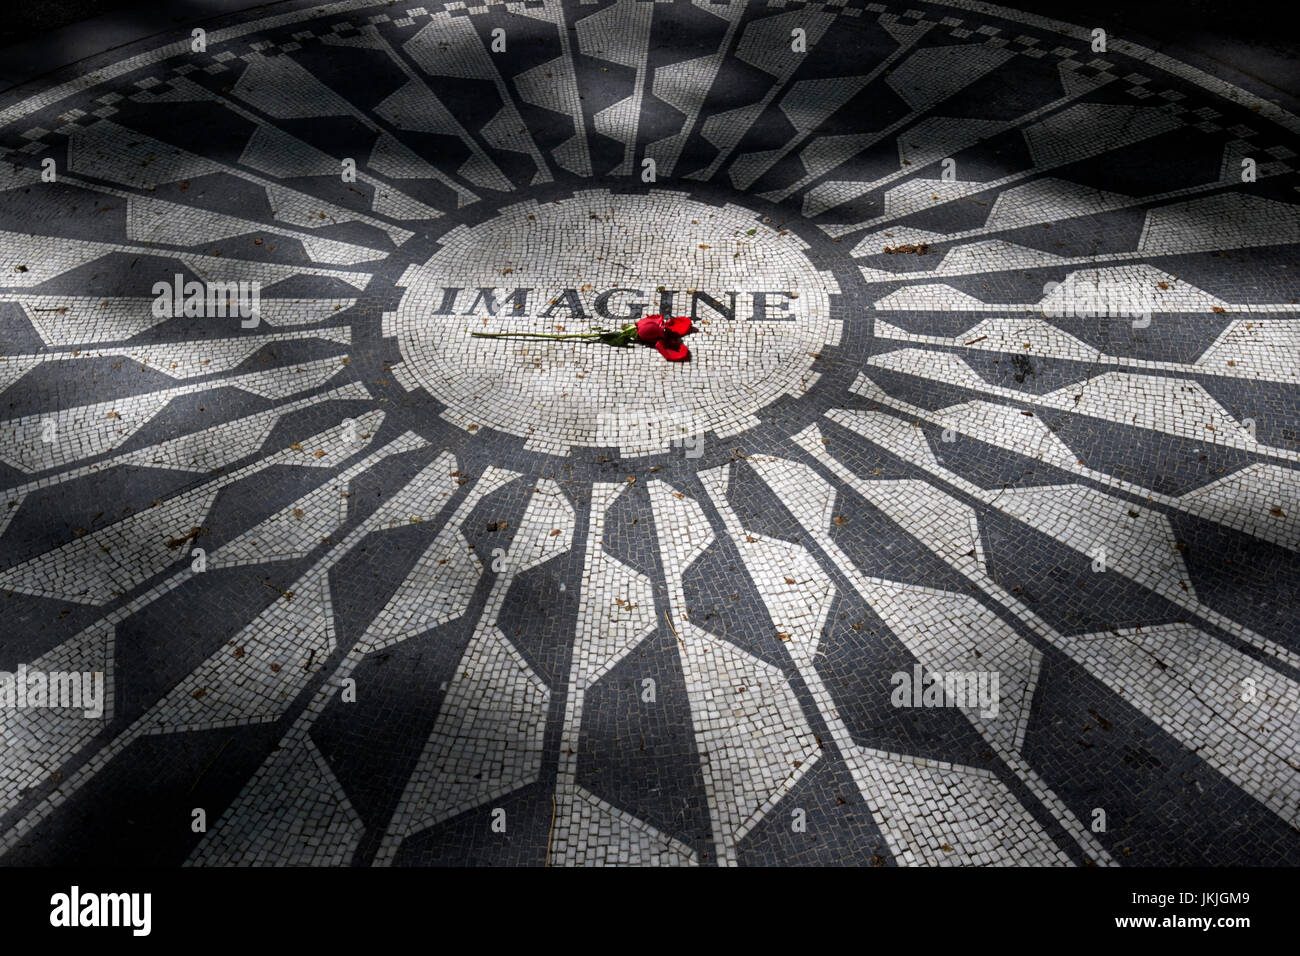 Single red rose sul immaginare mosaico dedicato a John Lennon in central Park di New York City STATI UNITI D'AMERICA Foto Stock